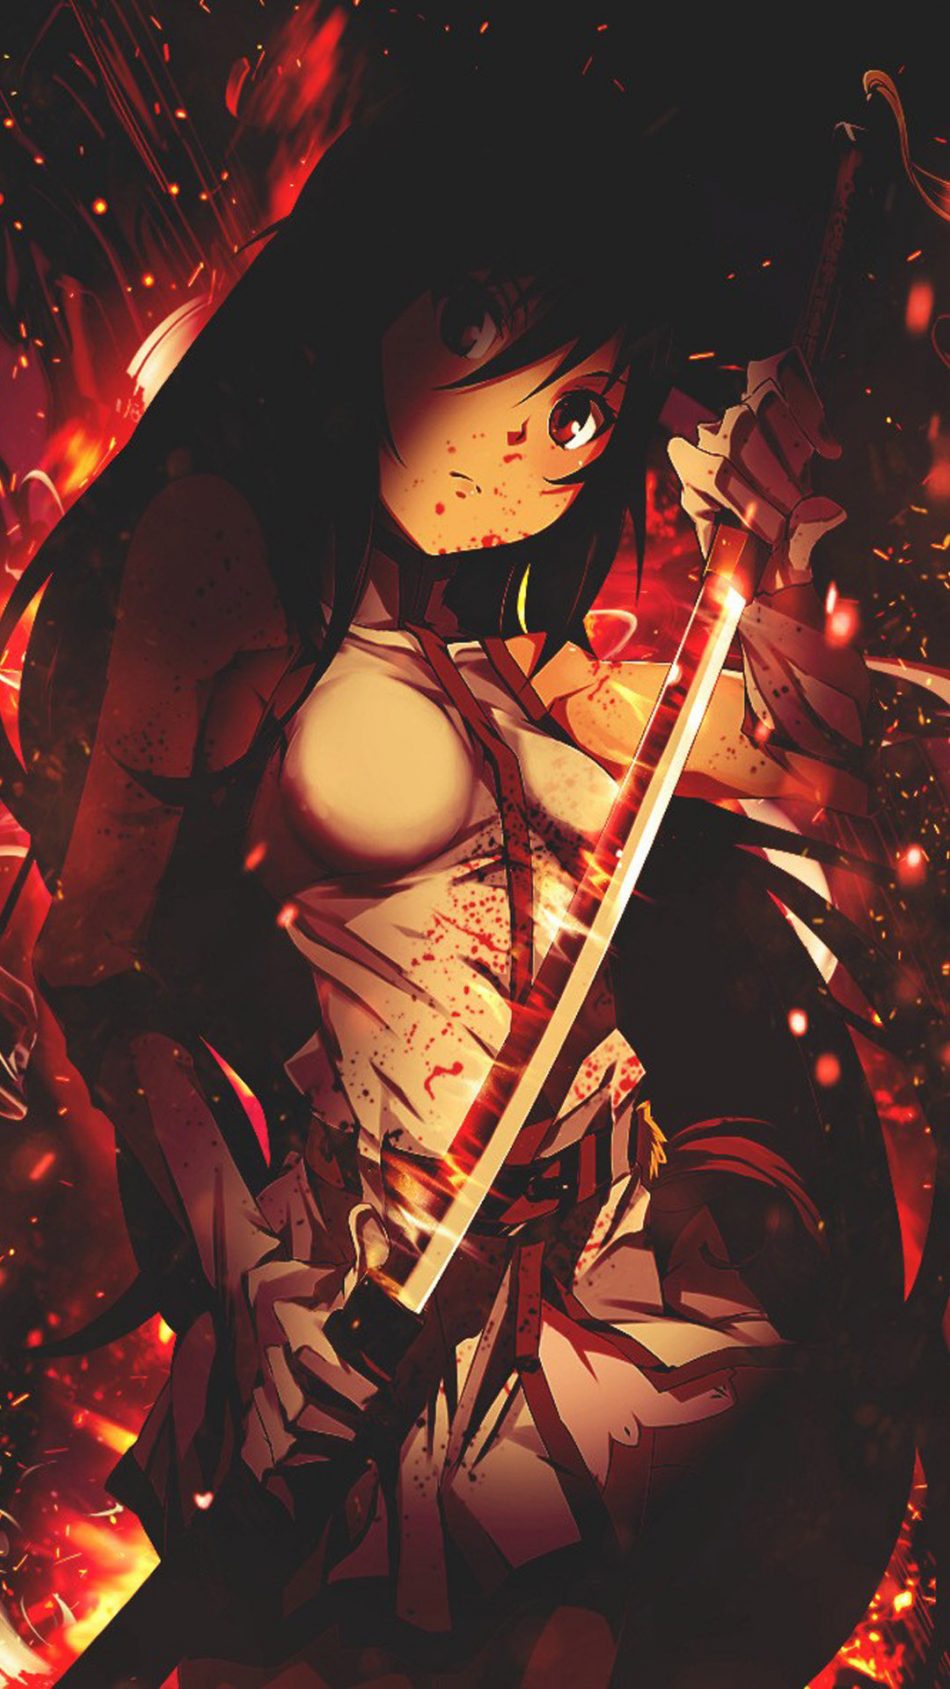 Blade Anime Girl Free 4k Ultra Hd Mobile Wallpaper